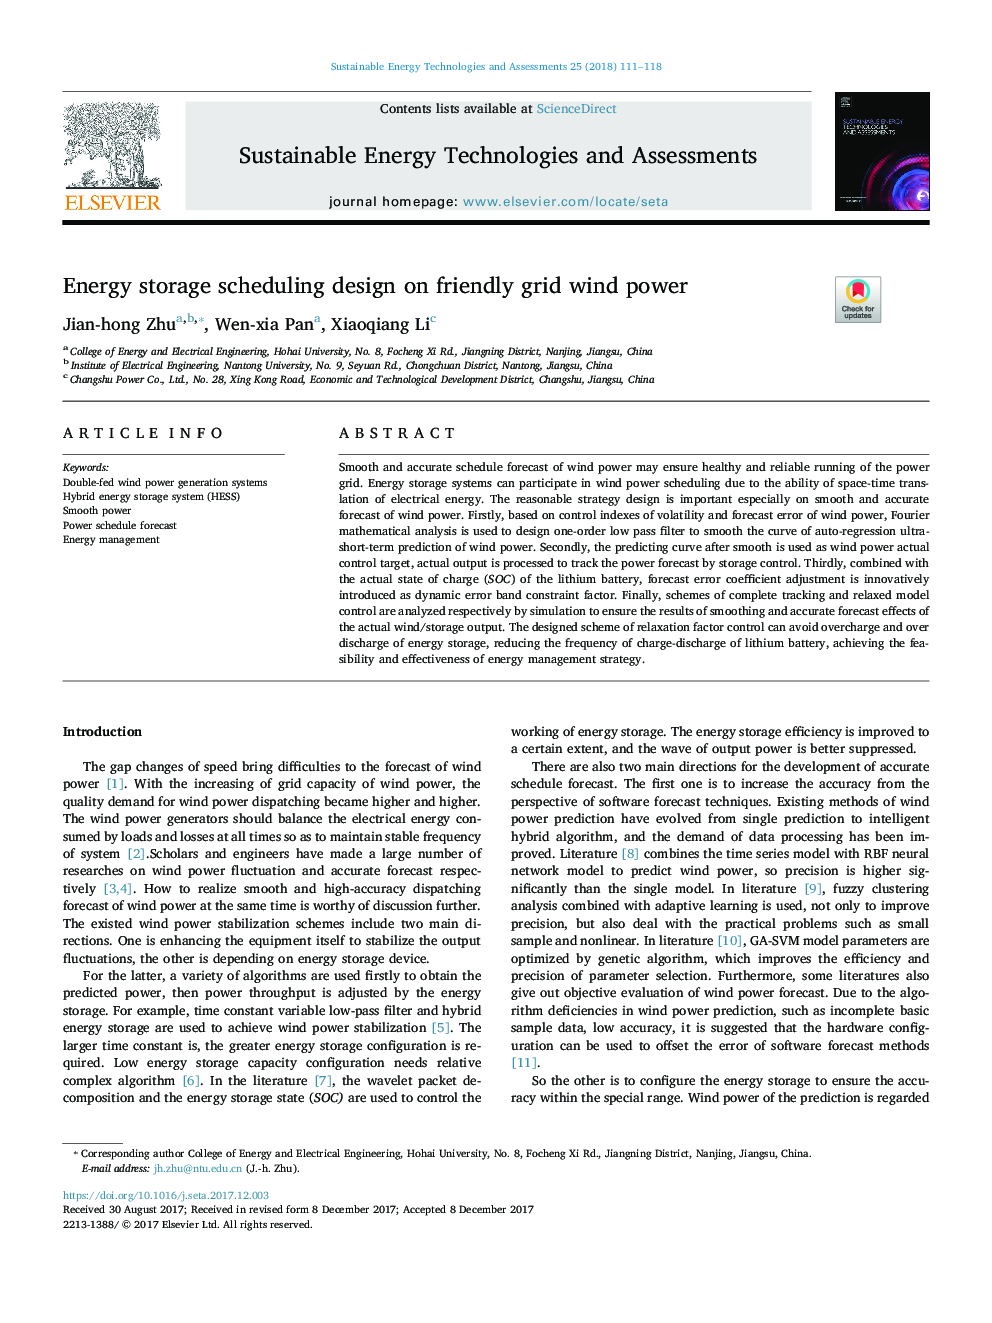 طراحی زمانبندی ذخیره انرژی بر روی انرژی باد دوستانه 